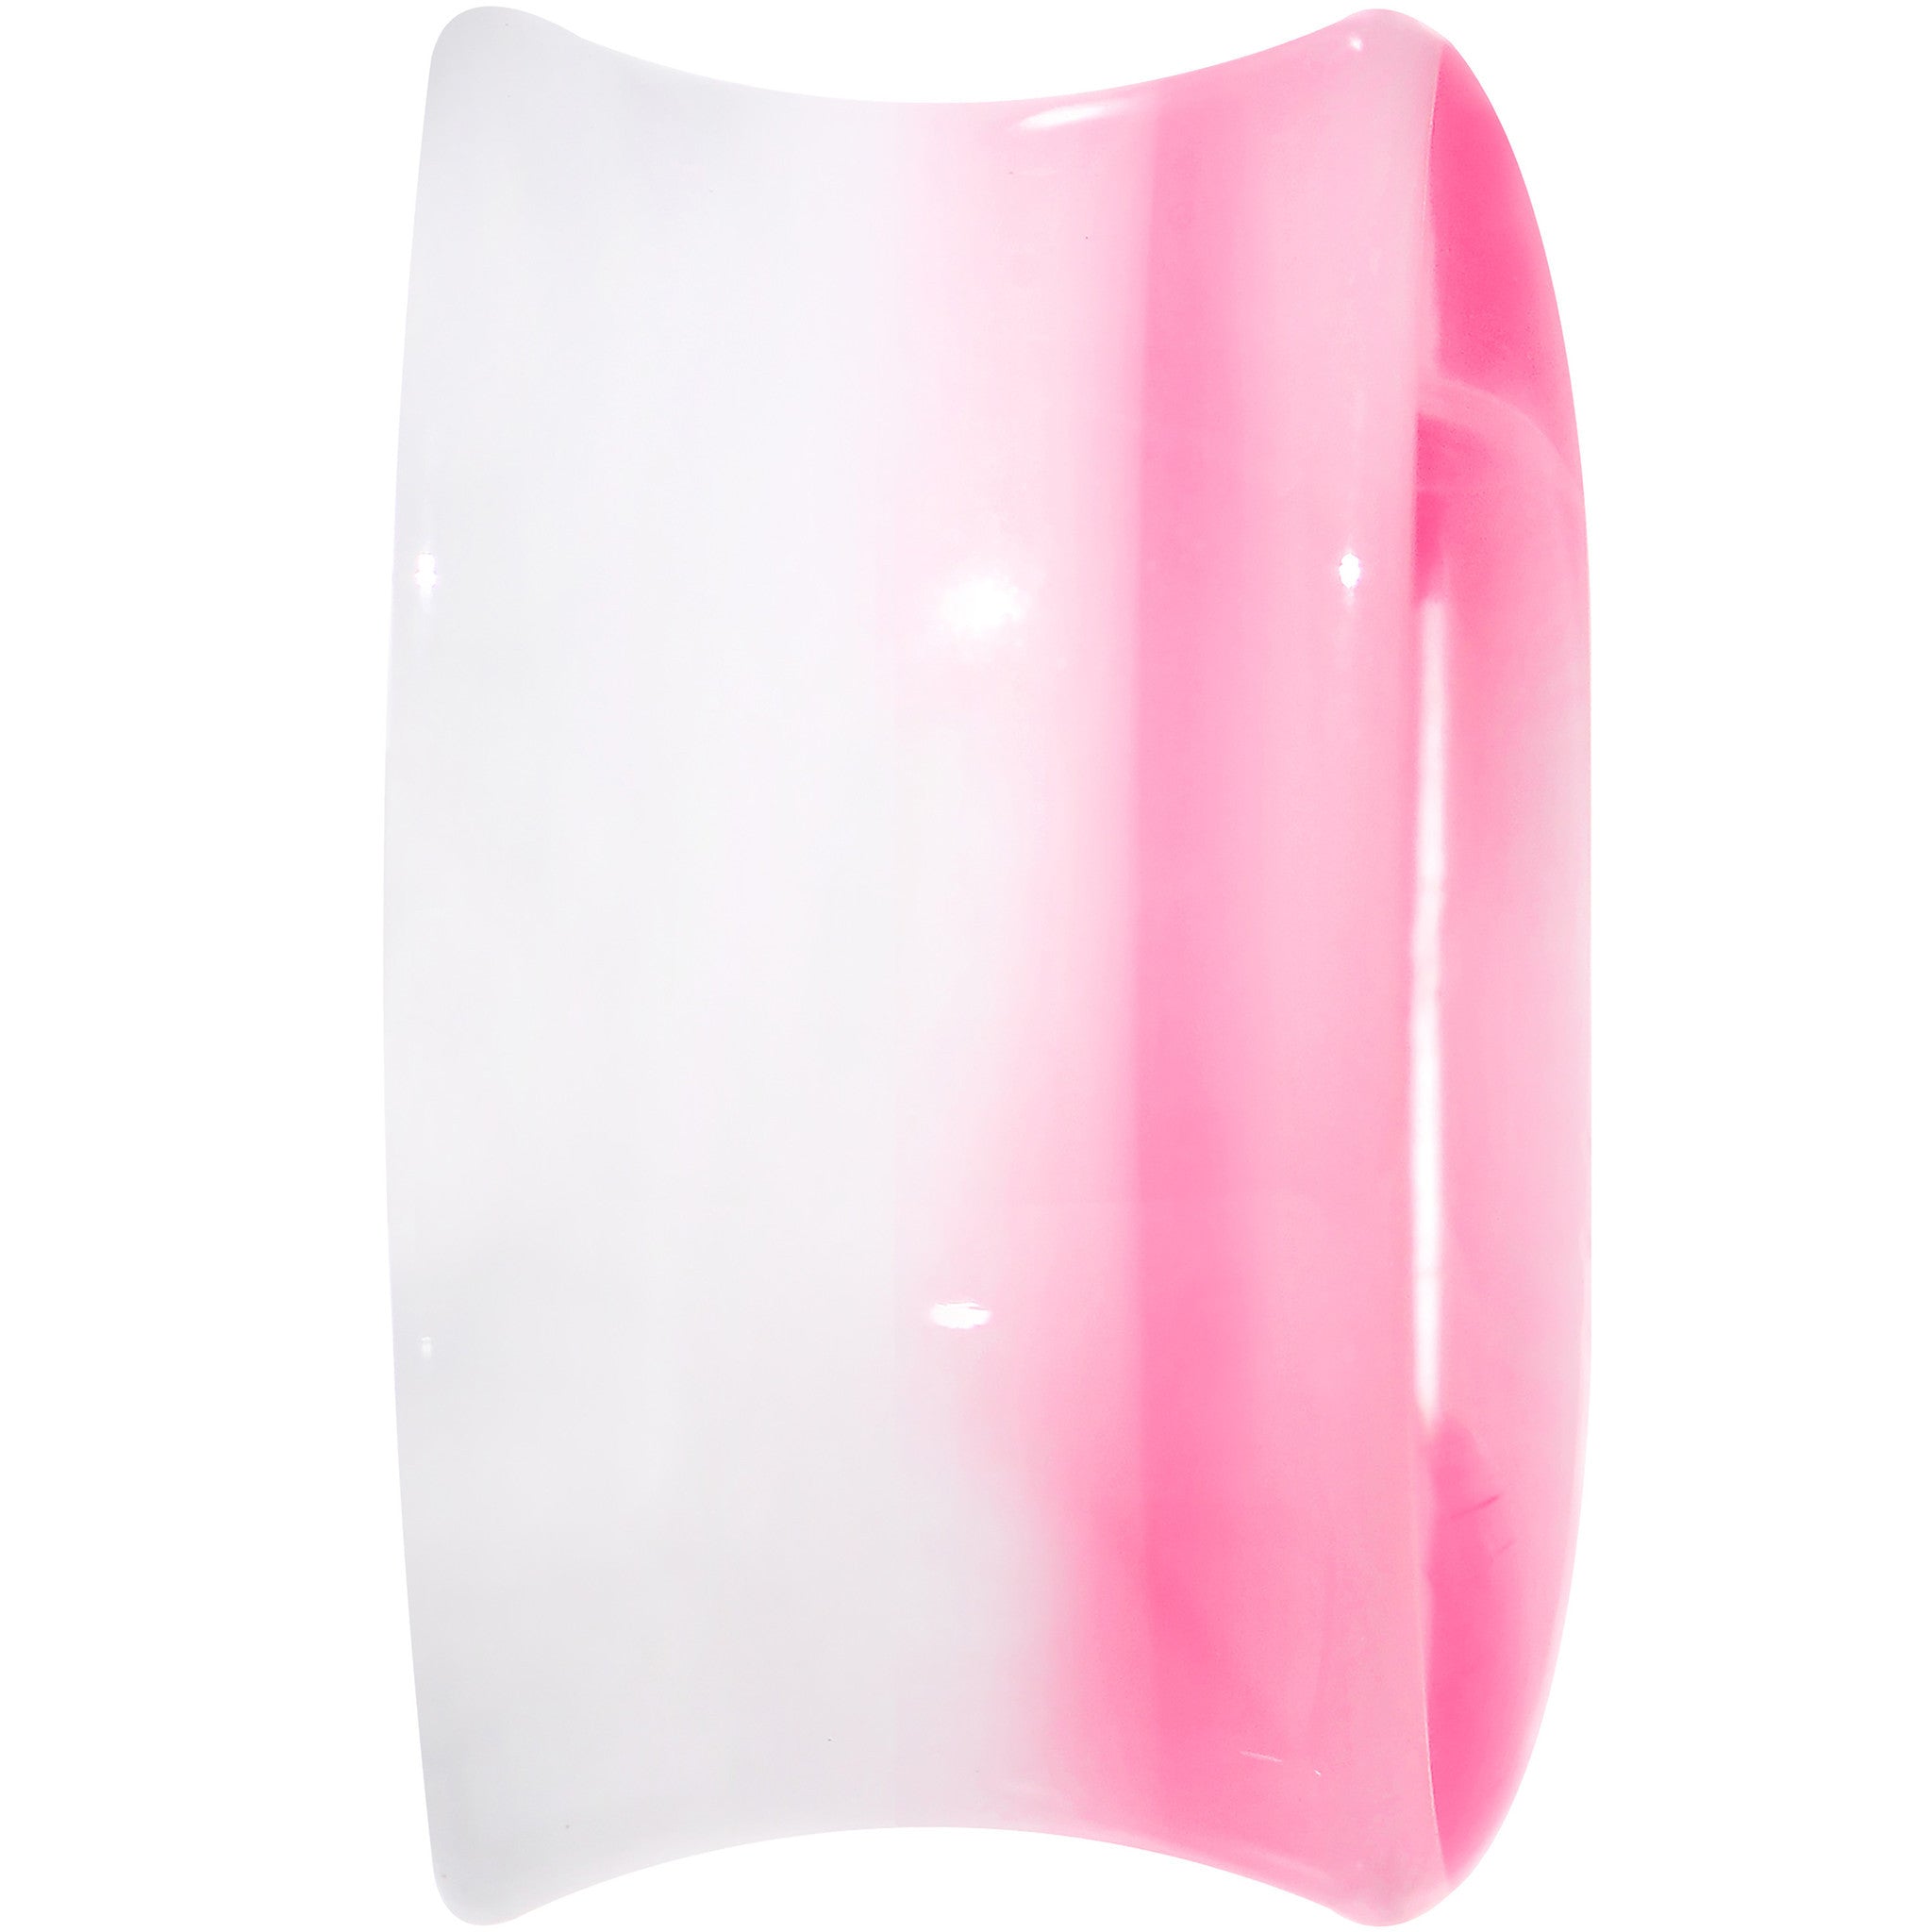 5/8 White Pink Acrylic Adoring Heart Saddle Plug